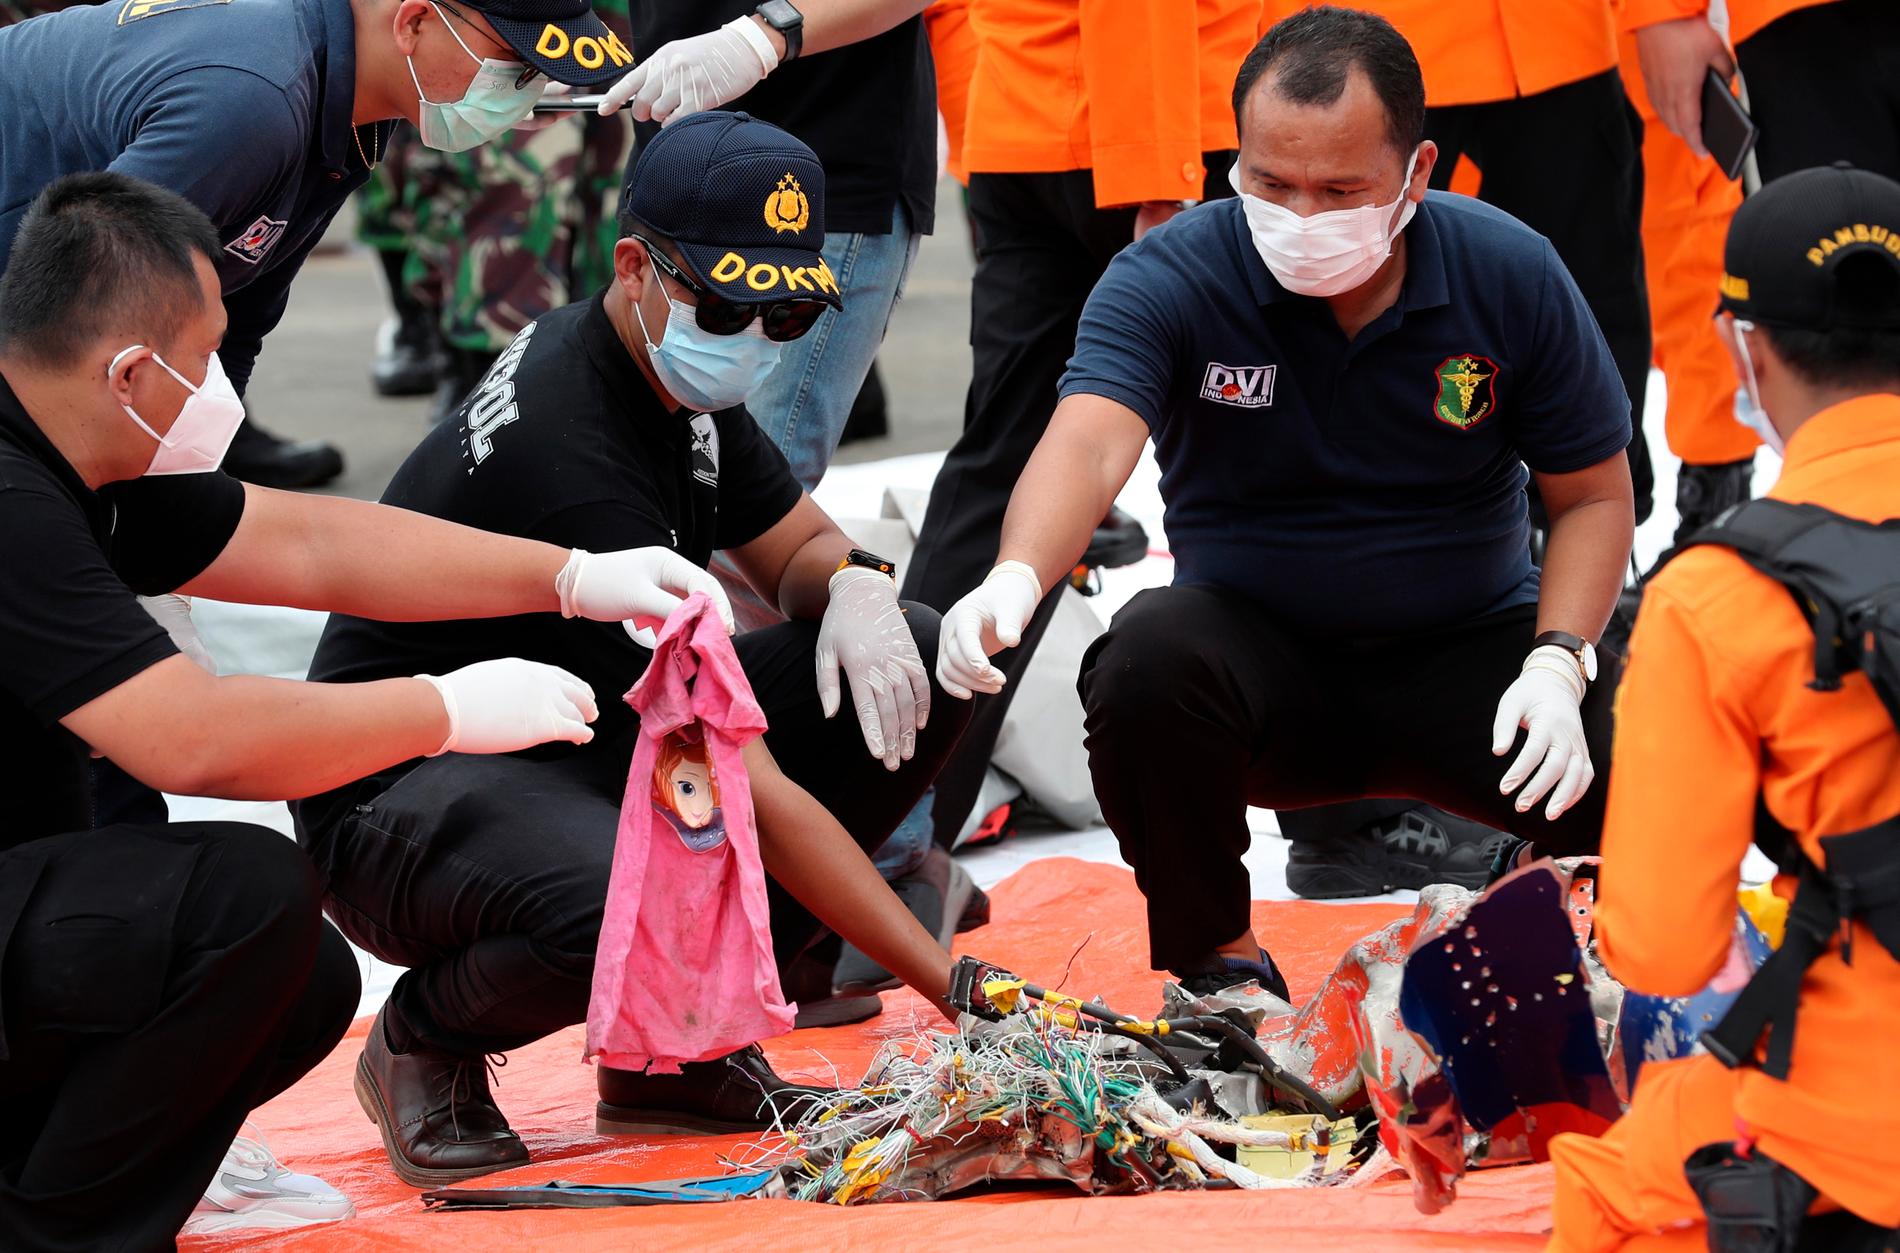 Haveriutredare går igenom fynd som hittats i vattnet utanför Jakarta i Indonesien där det försvunna passagerarplanet tros ha kraschat.